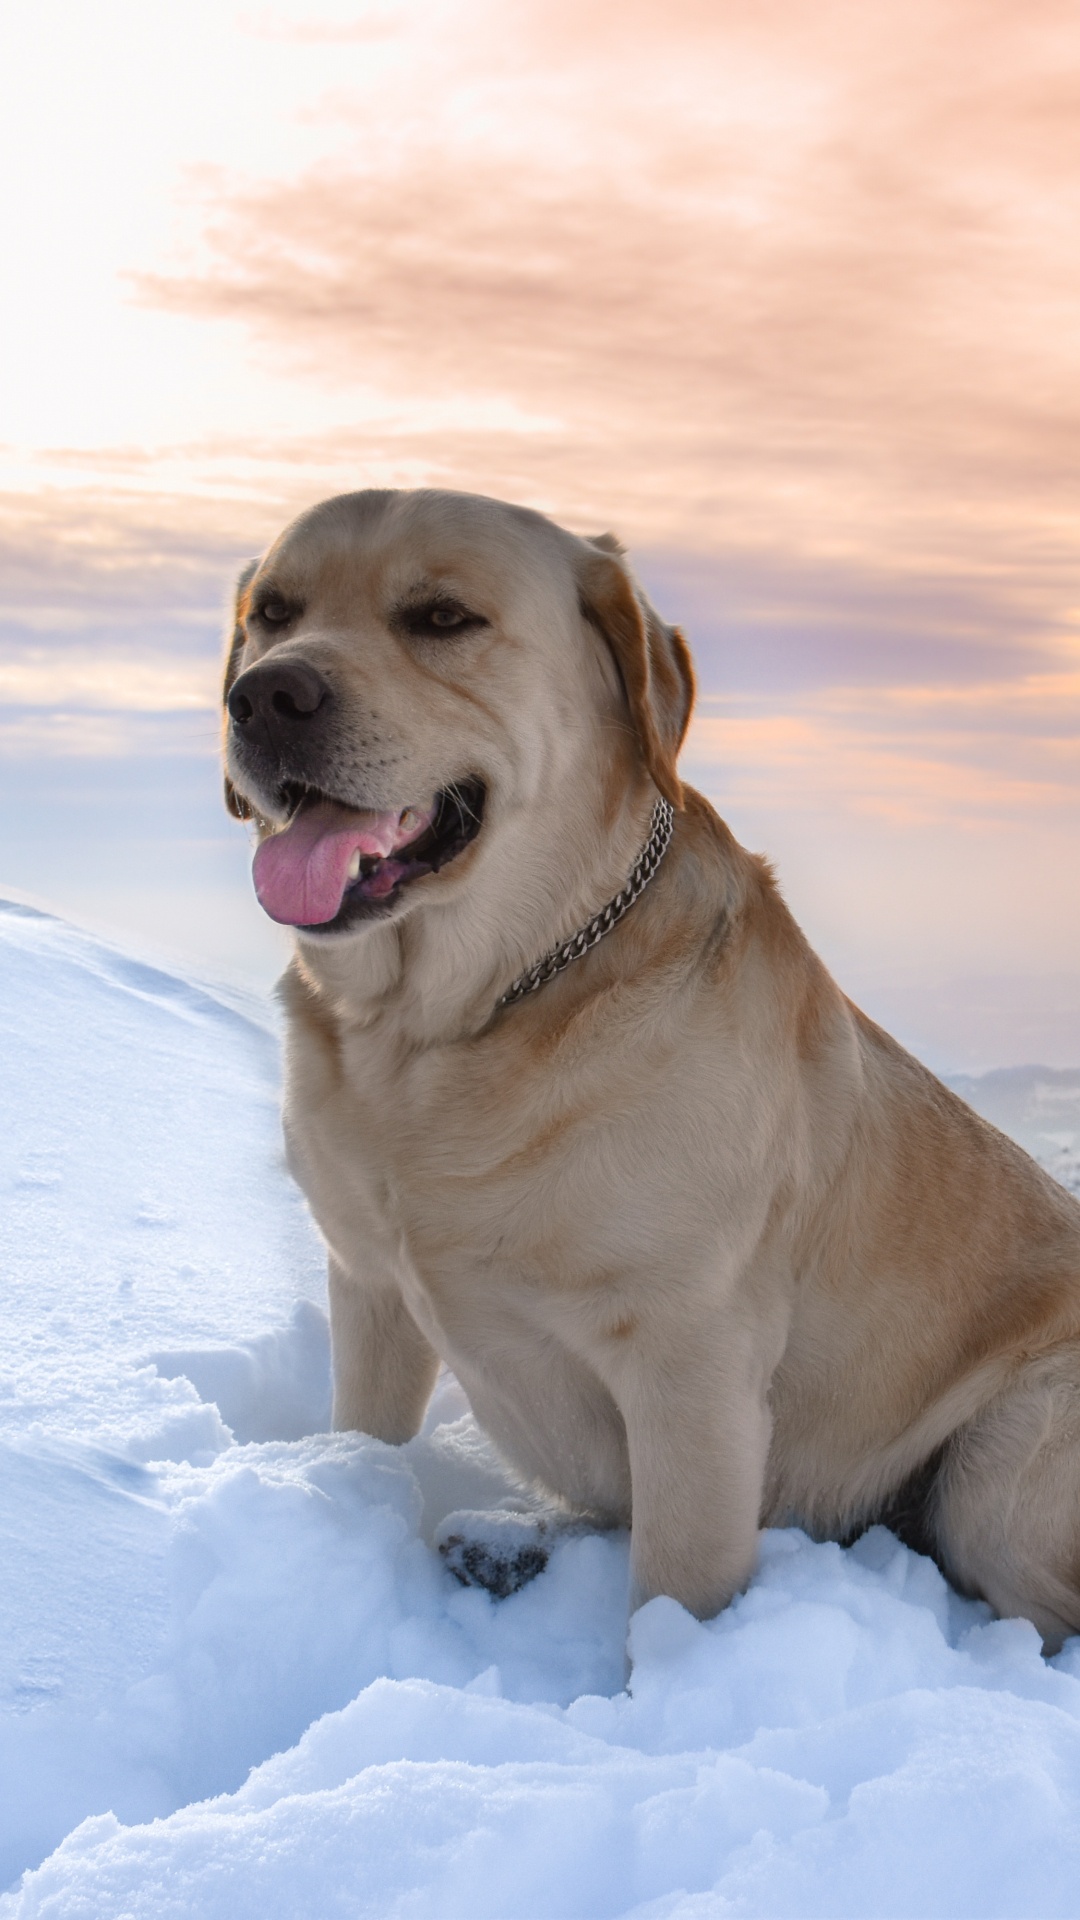 Brauner, Kurzhaariger Hund Auf Schneebedecktem Boden Tagsüber. Wallpaper in 1080x1920 Resolution